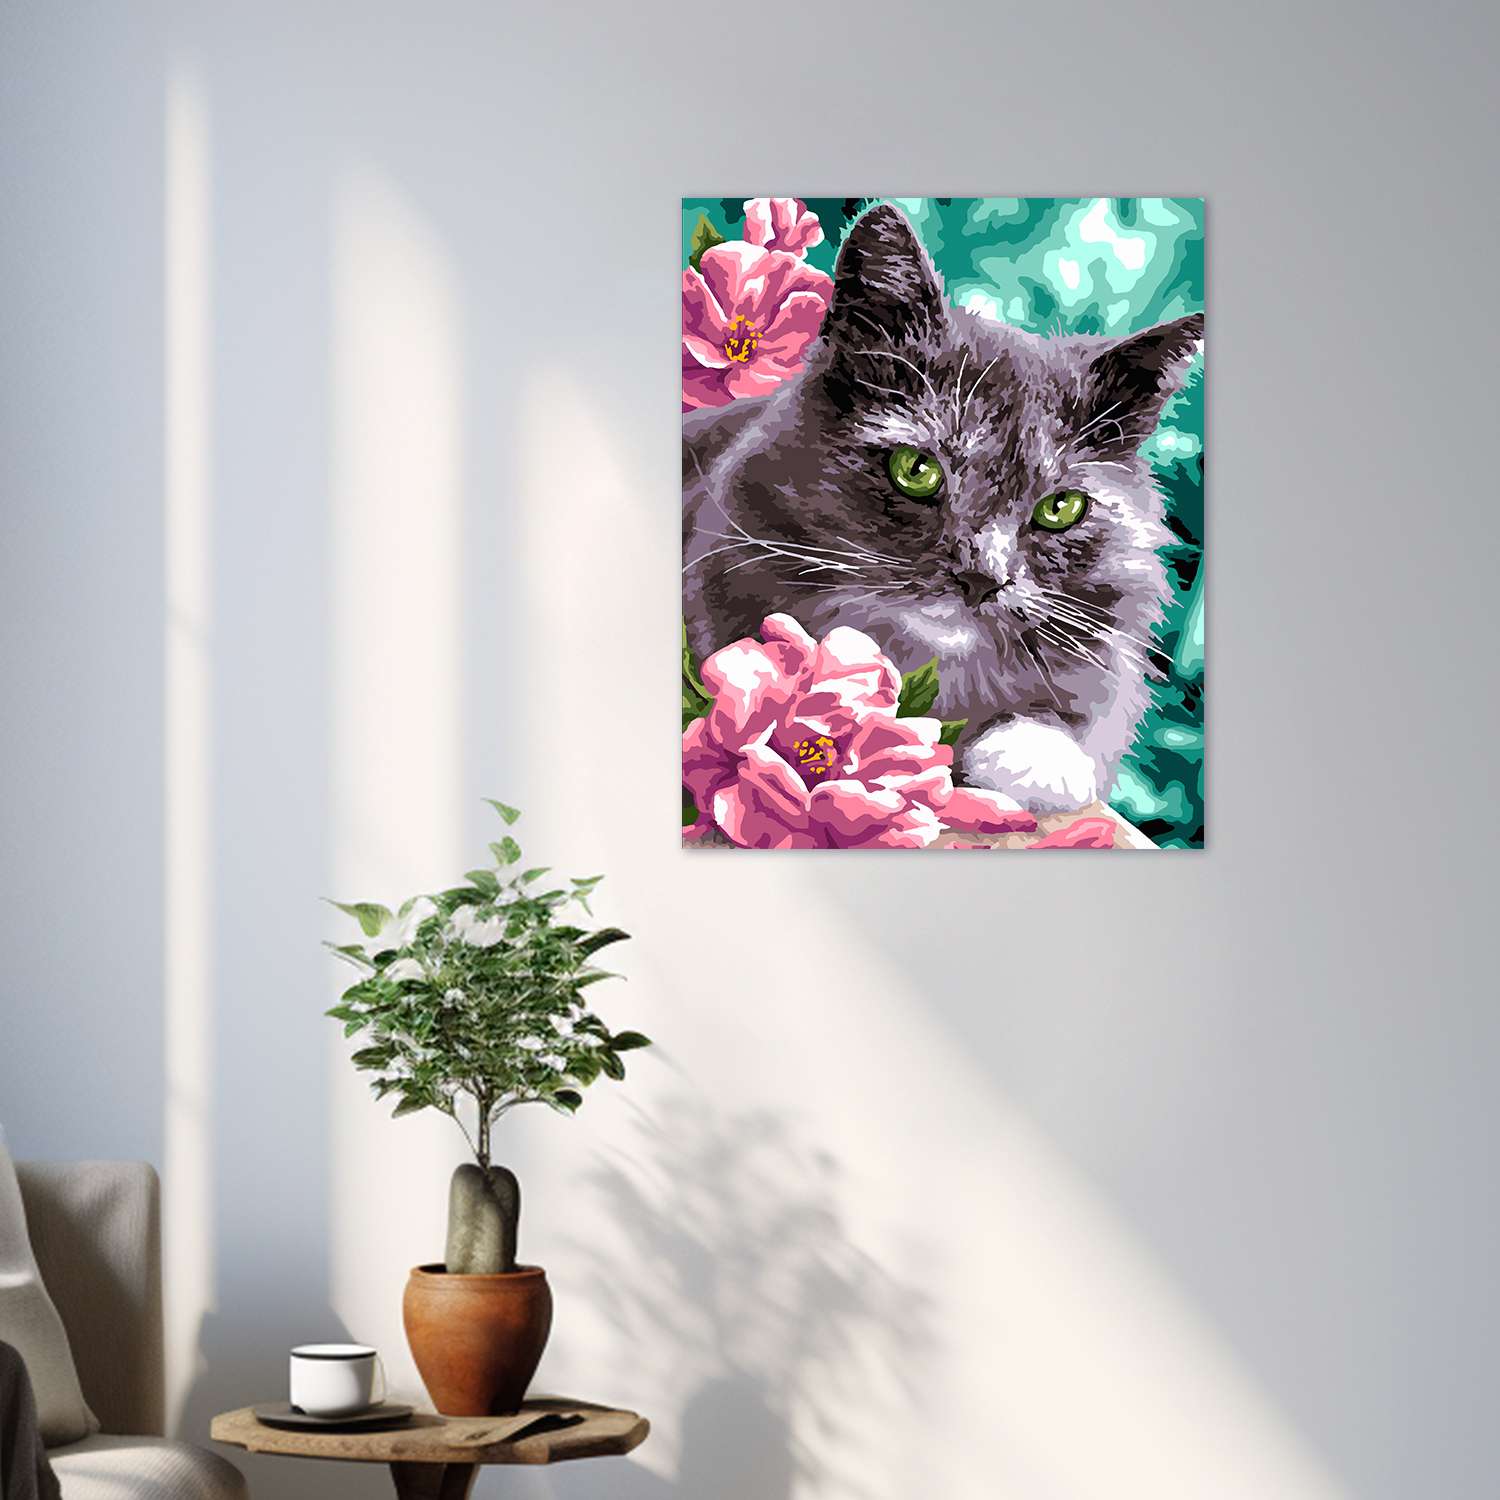 Картина по номерам LORI Котик в цветах 40х50 см на холсте с деревянным подрамником - фото 11